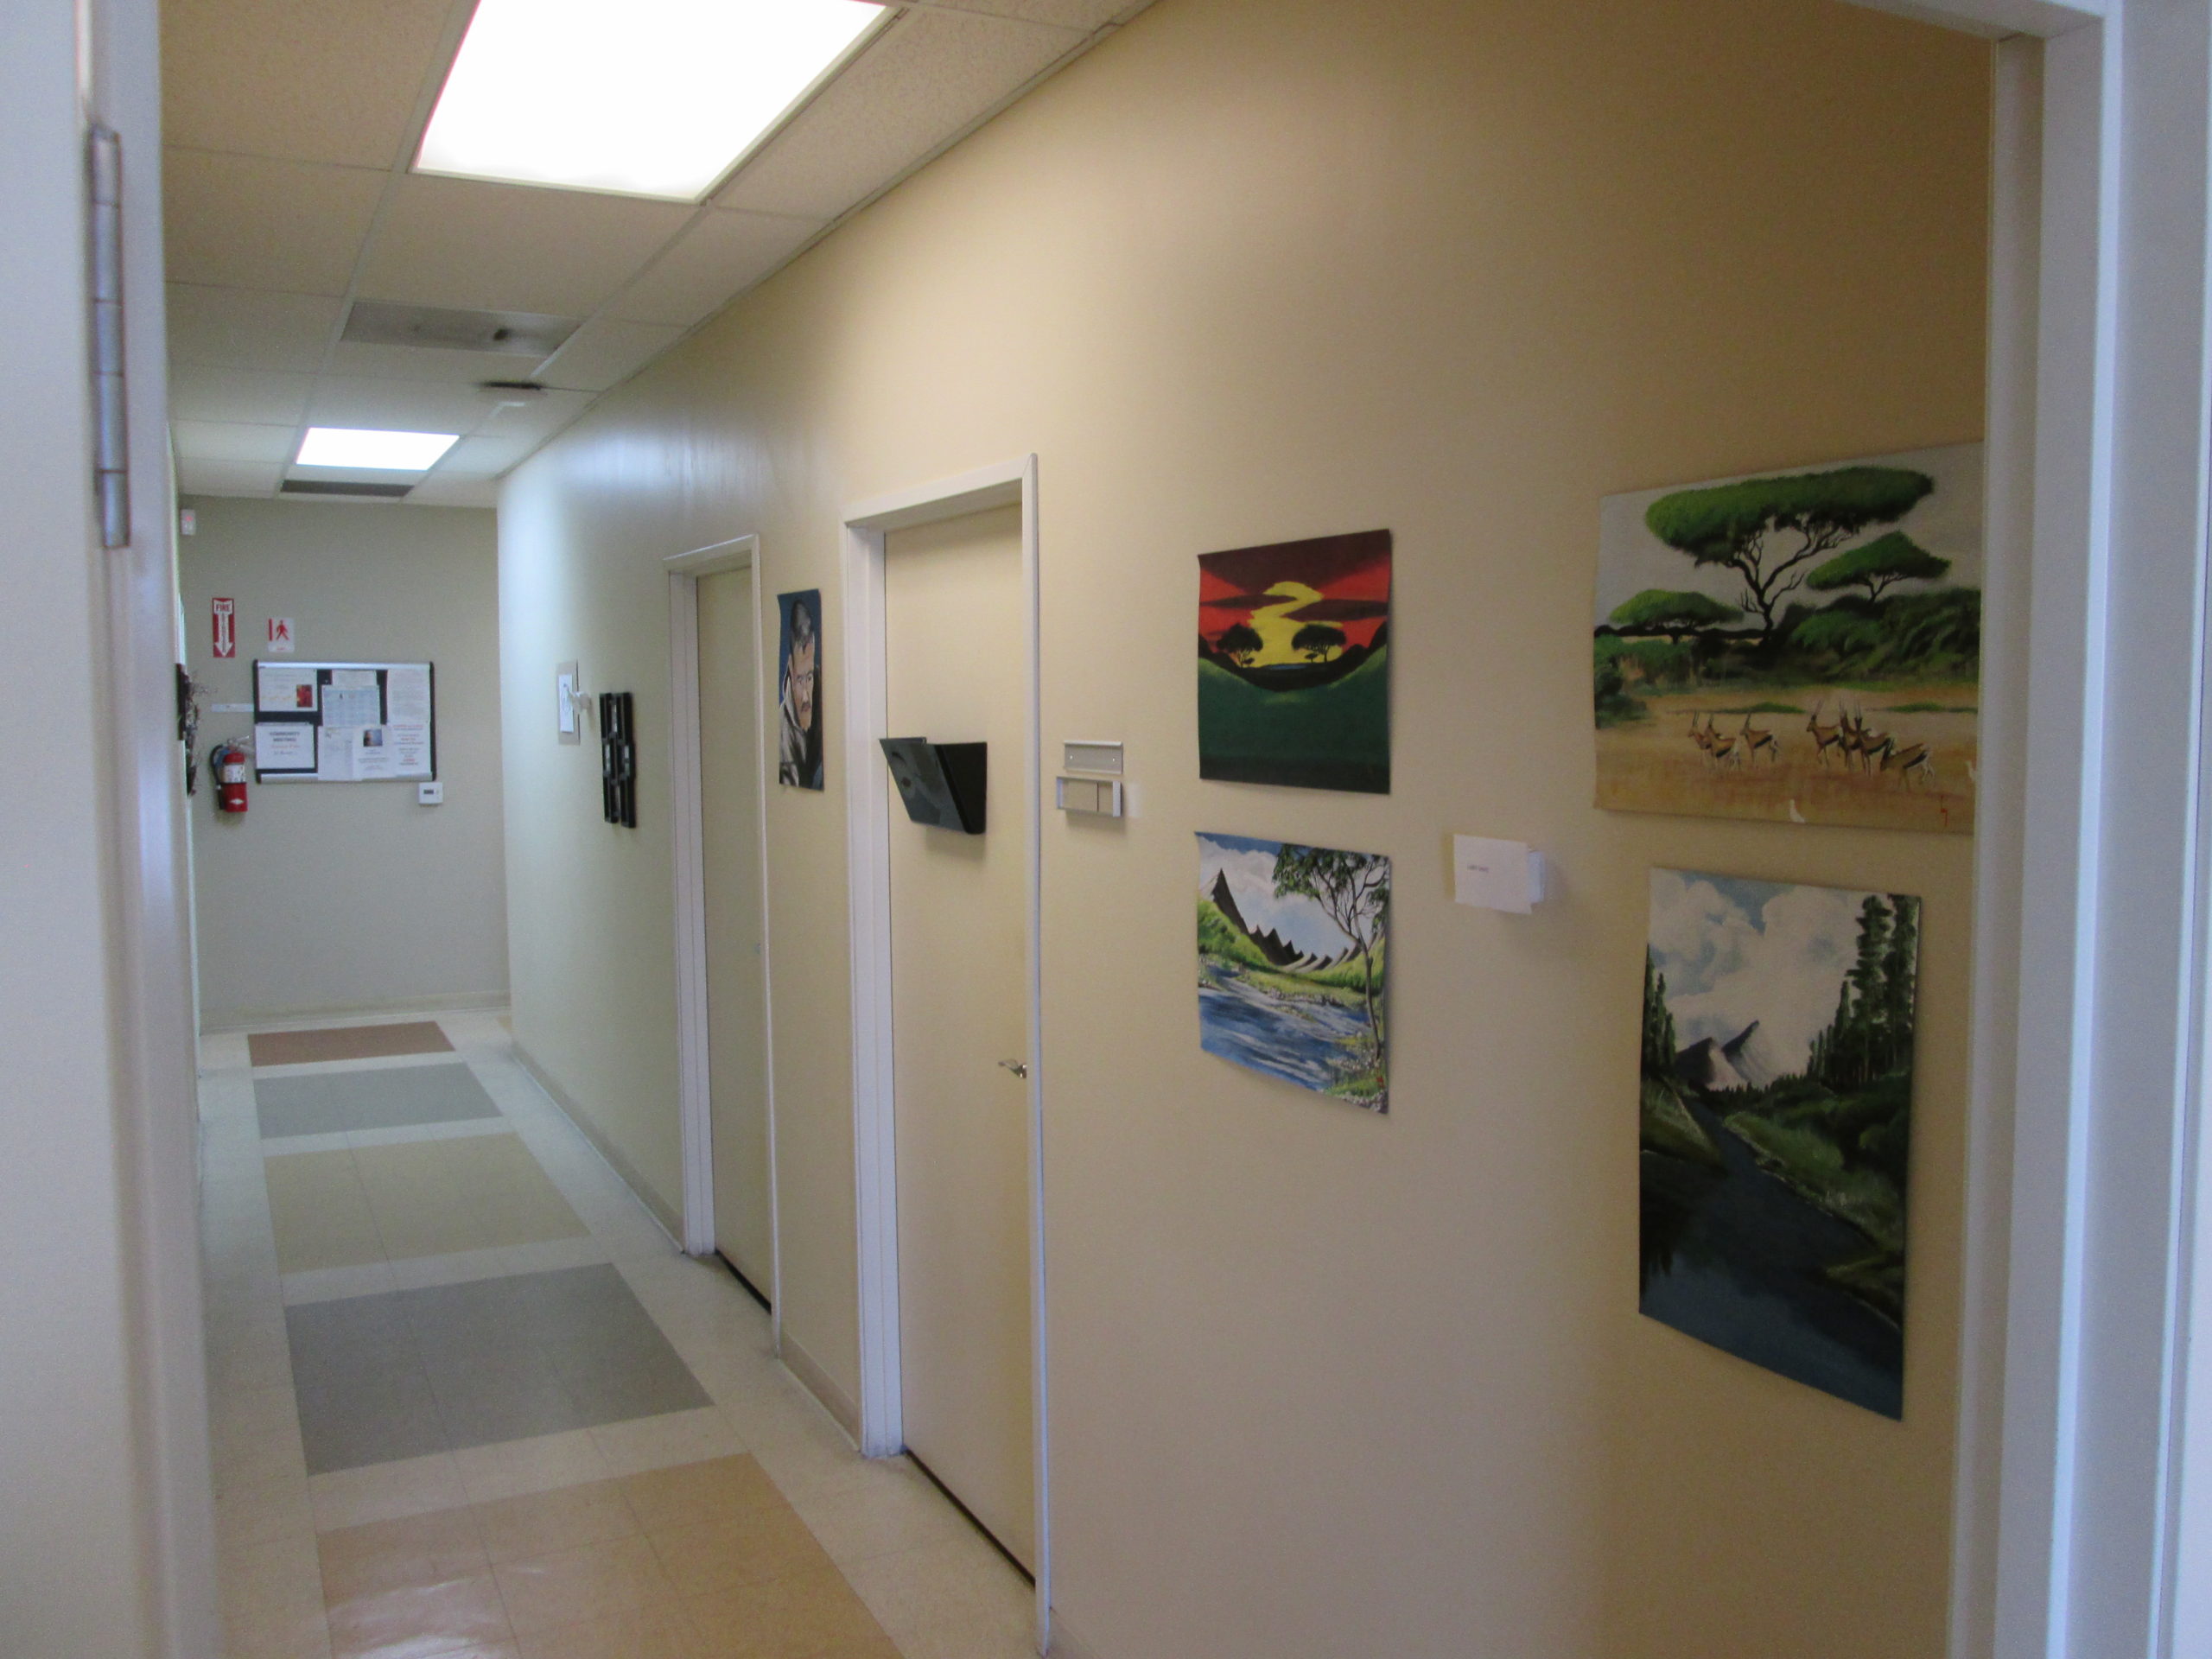 Vermont North - Hallway Art Show 4